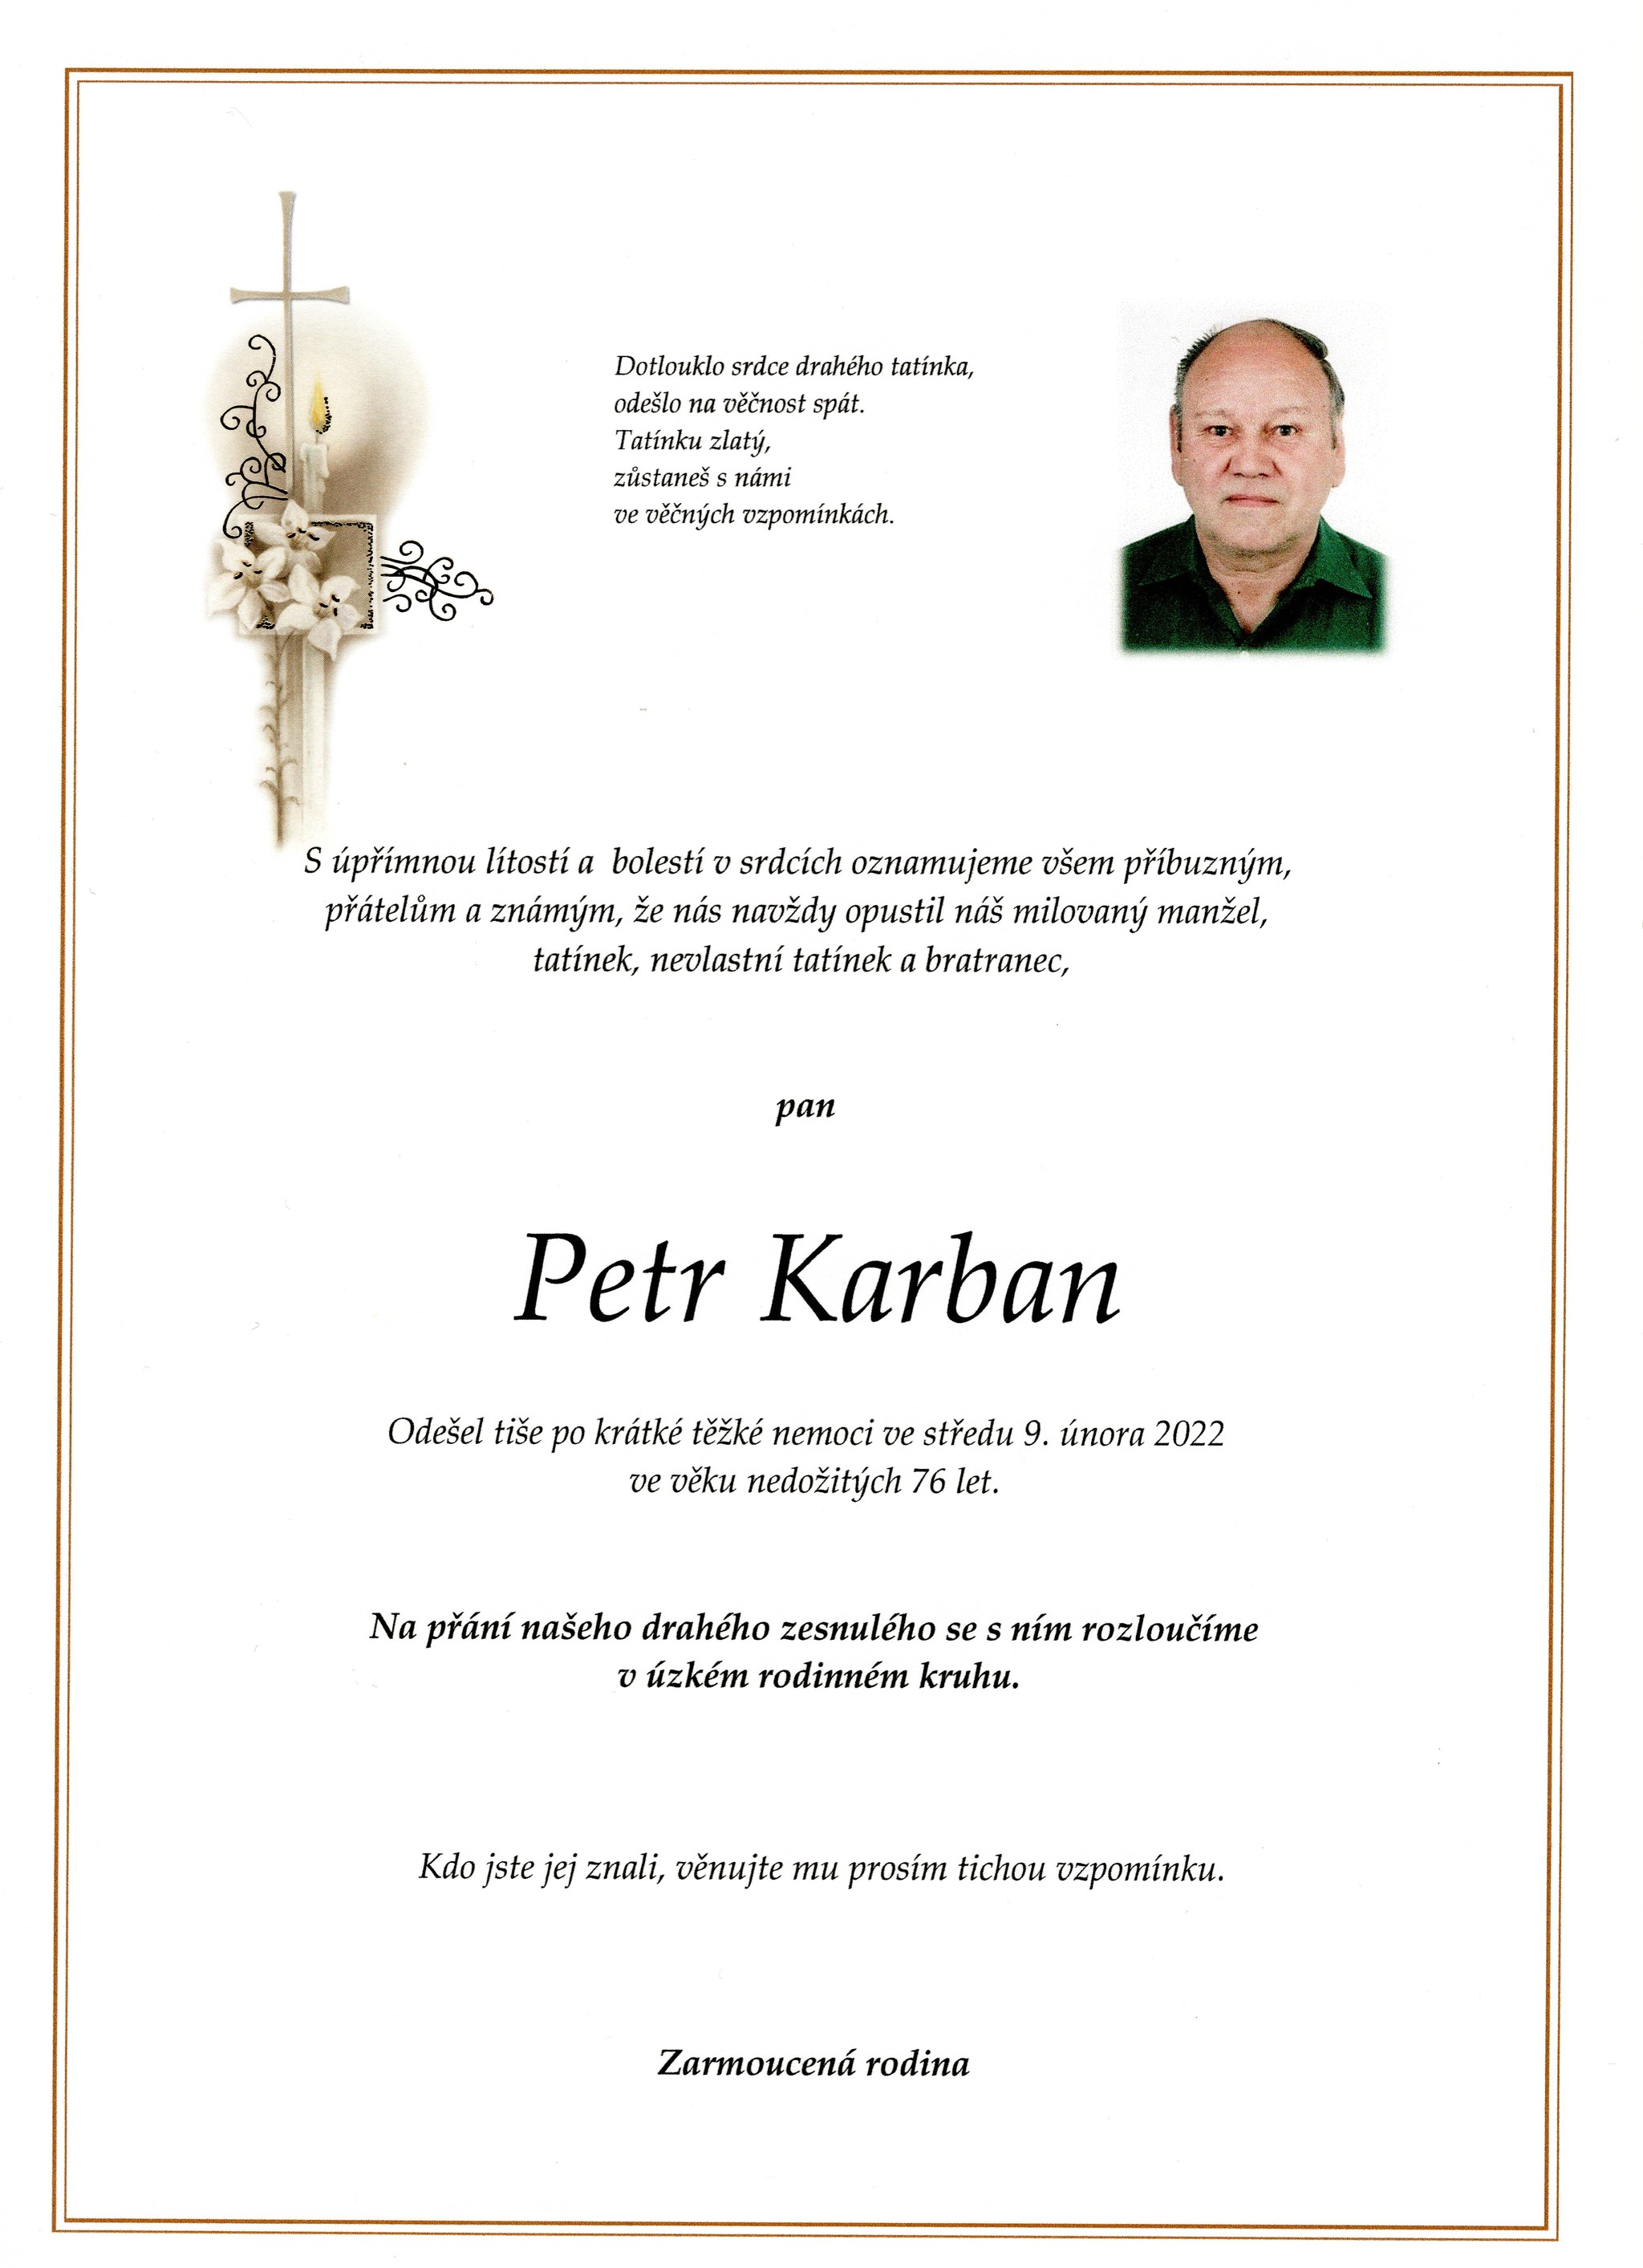 Petr Karban